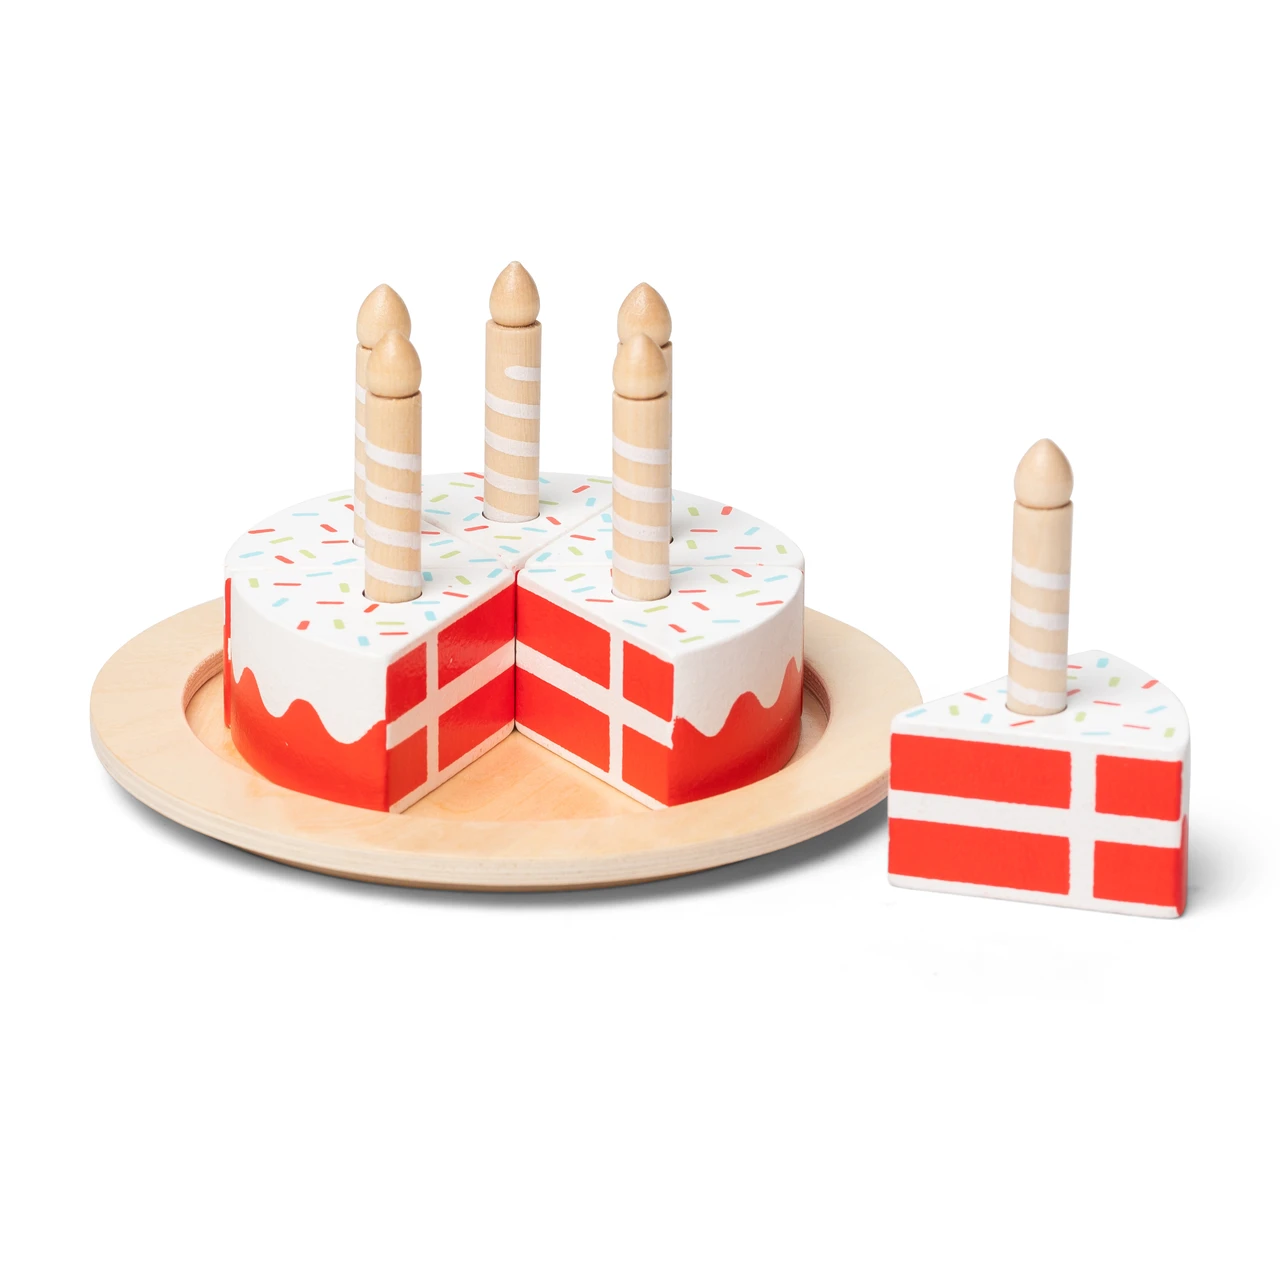 83 DK ideas | birthday wishes cake, happy birthday wishes cake, happy birthday  cake images